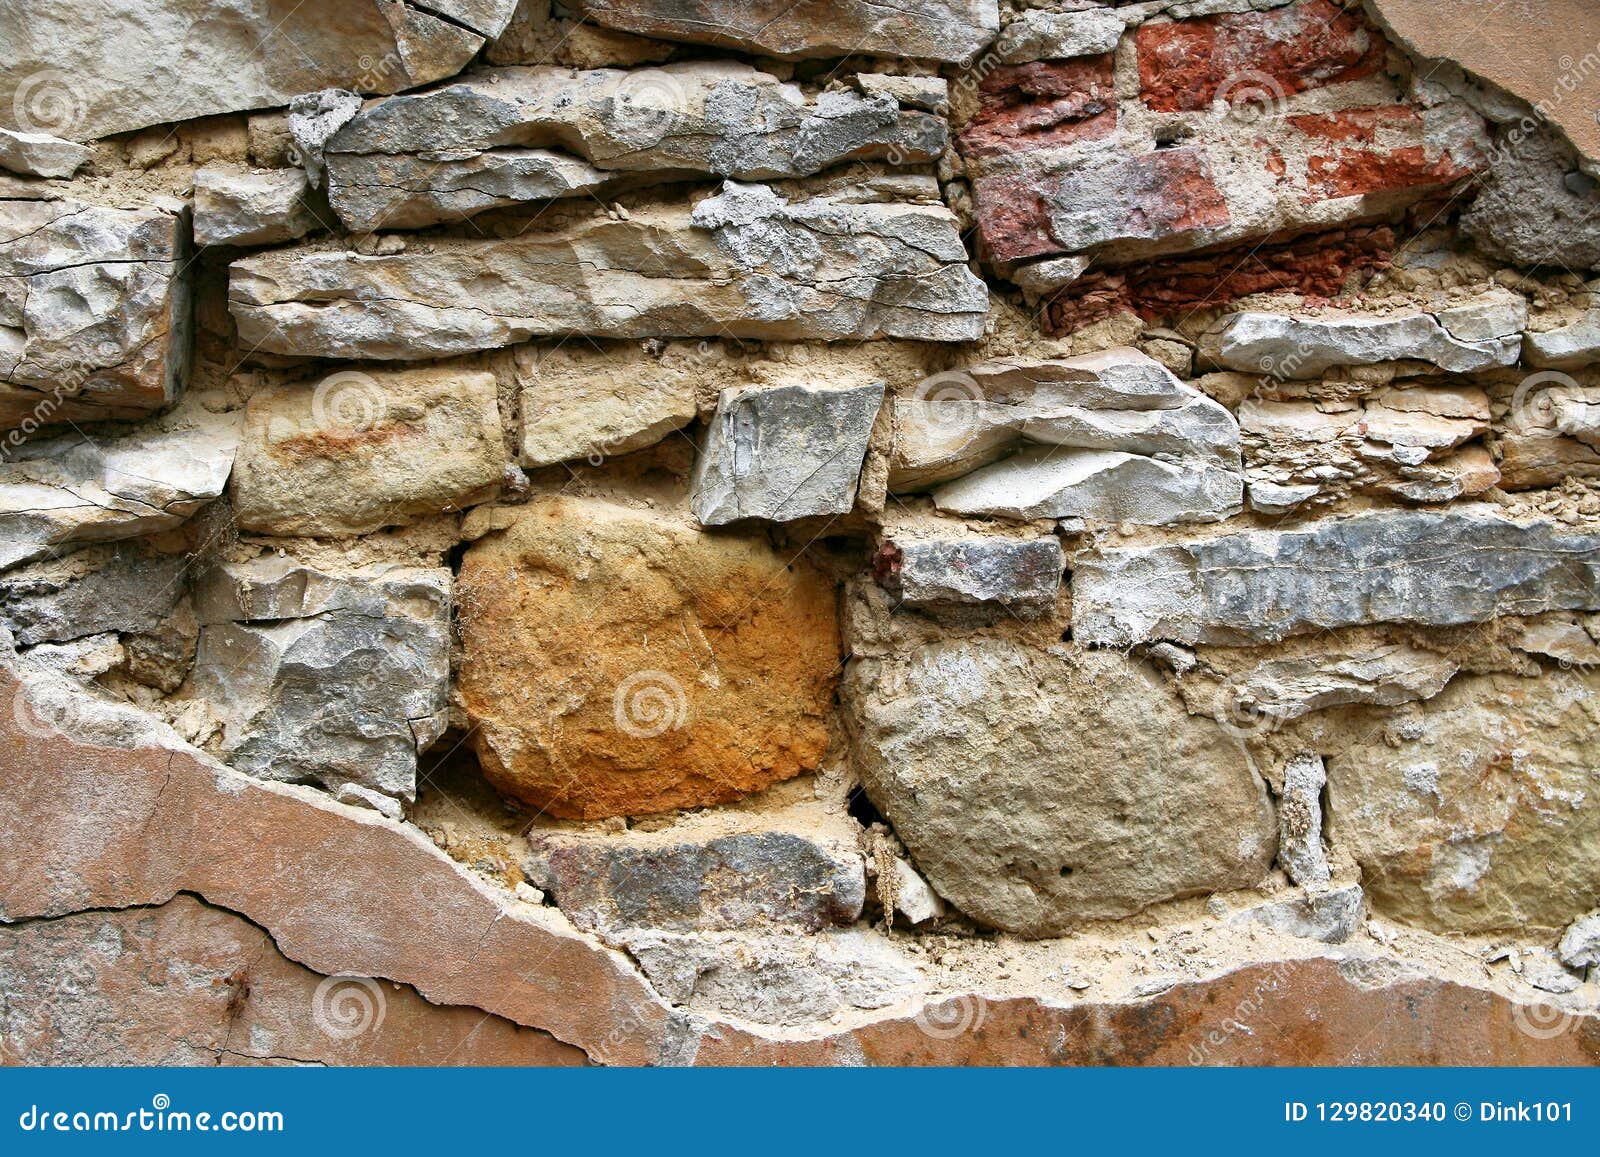 ancien stone and brick wall